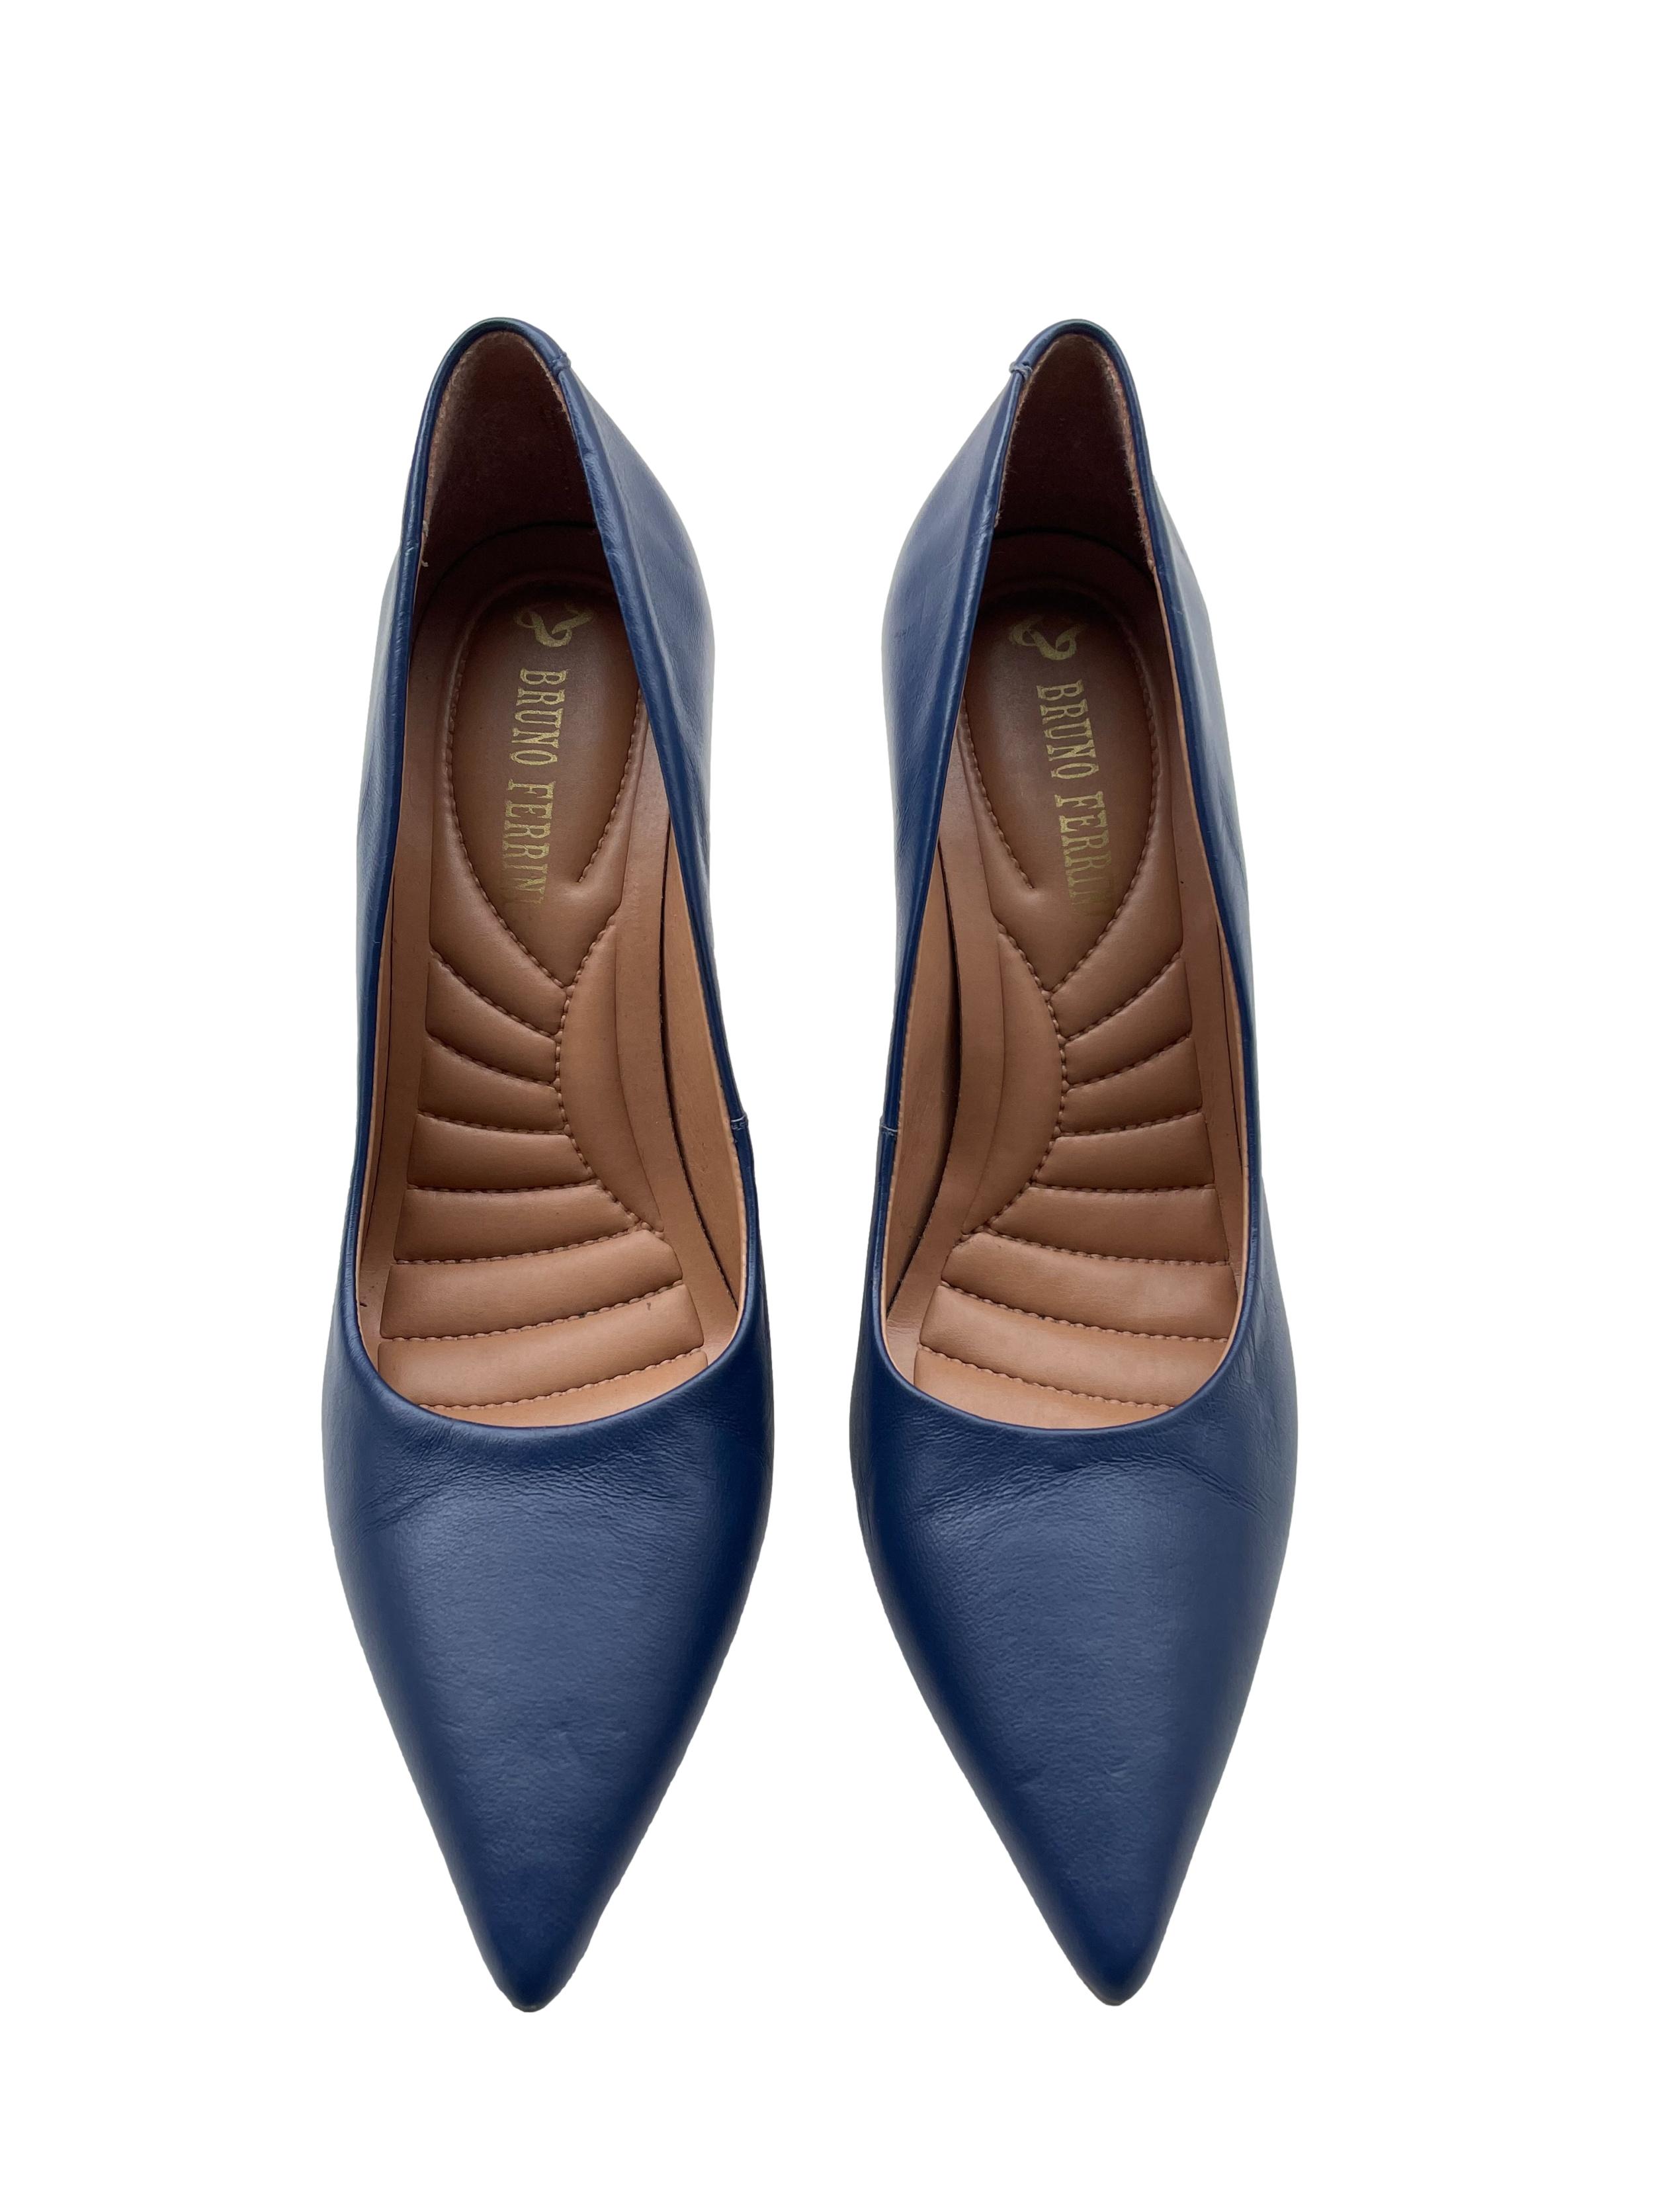 Zapatos Bruno Ferrini azules de cuero, modelo en punta, taco 9cm. Estado 9/10. Precio original S/ 300